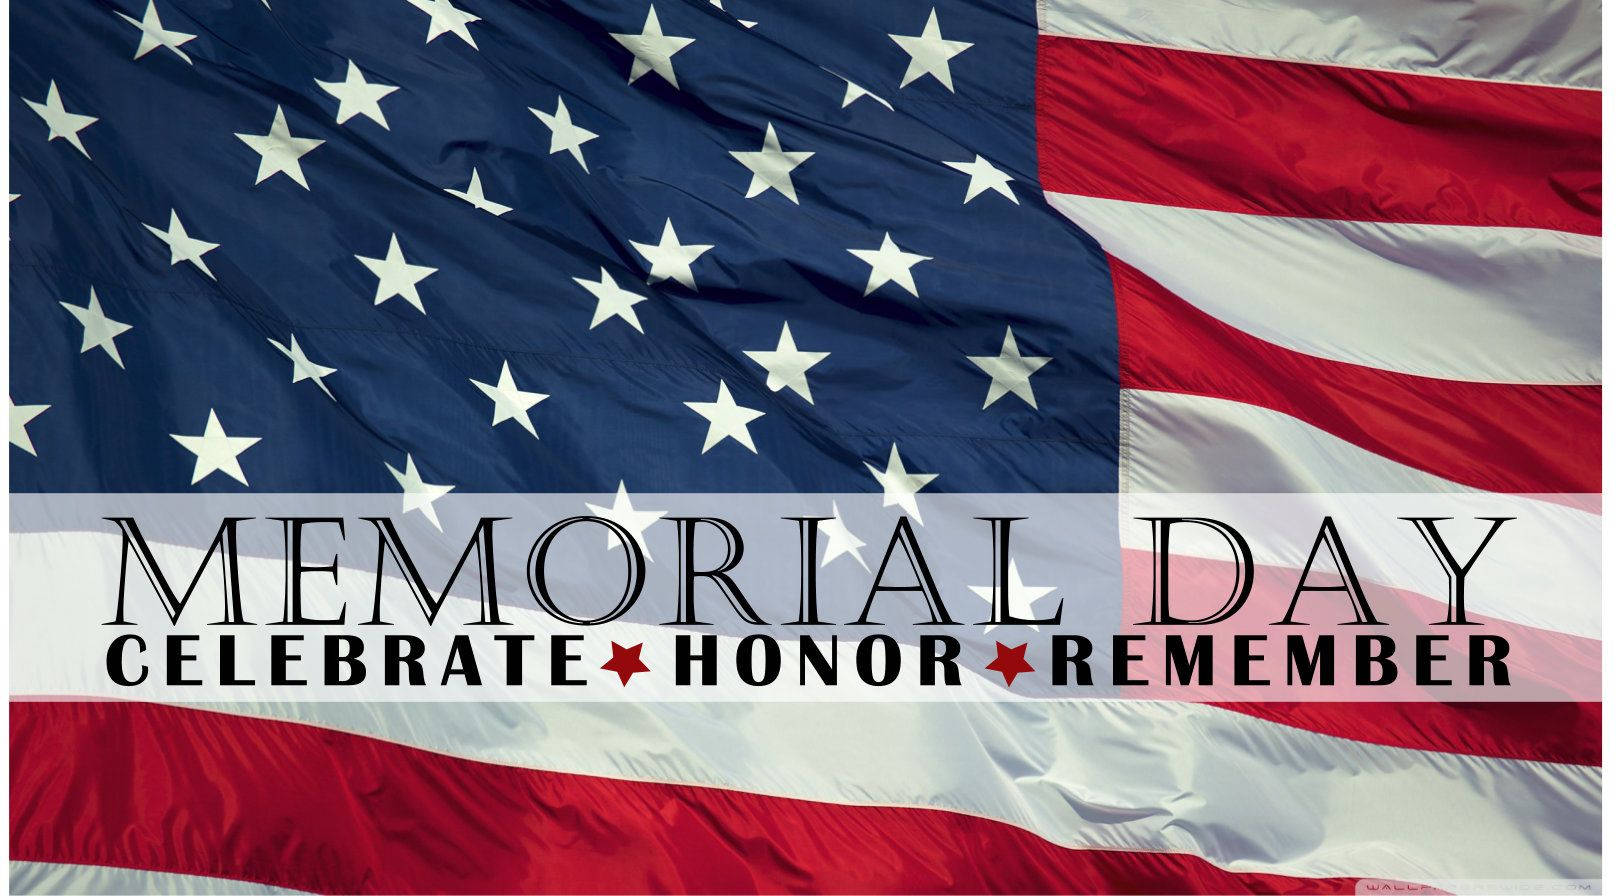 Memorial Day Flag Celebrate Honor Remember Wallpaper